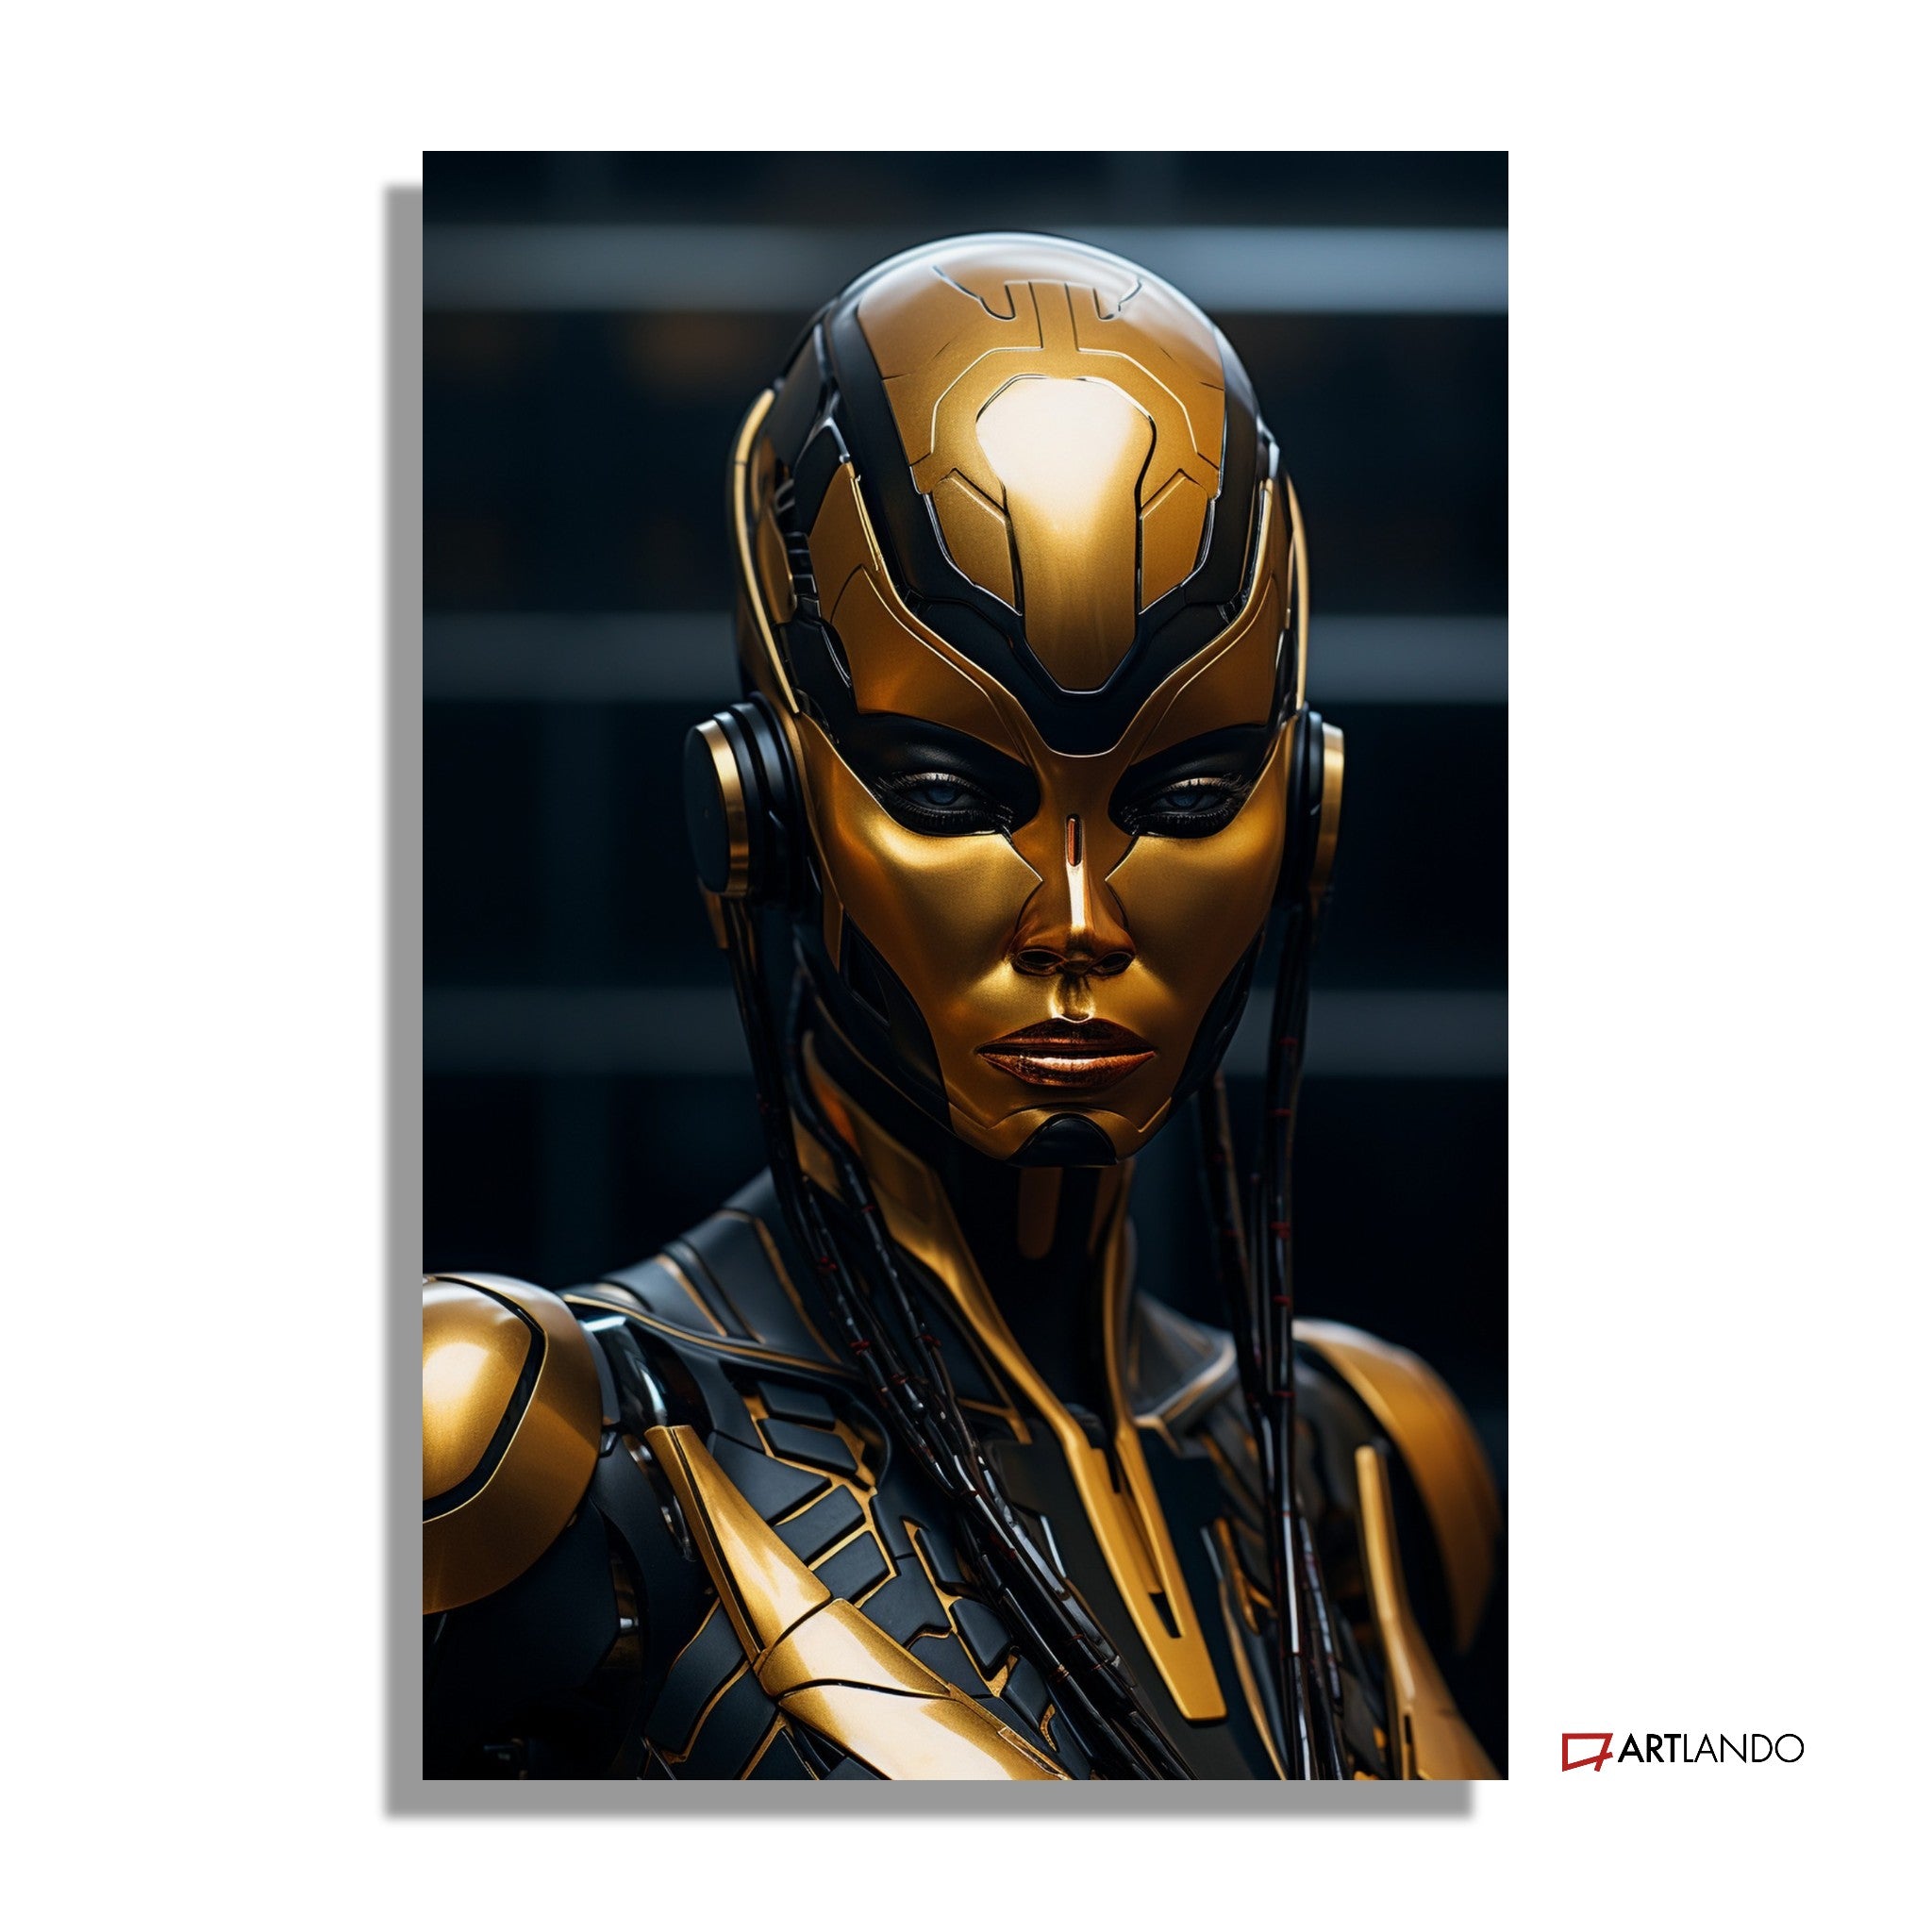 Anmutiger Cyborg in Gold und Schwarz - Portrait Art